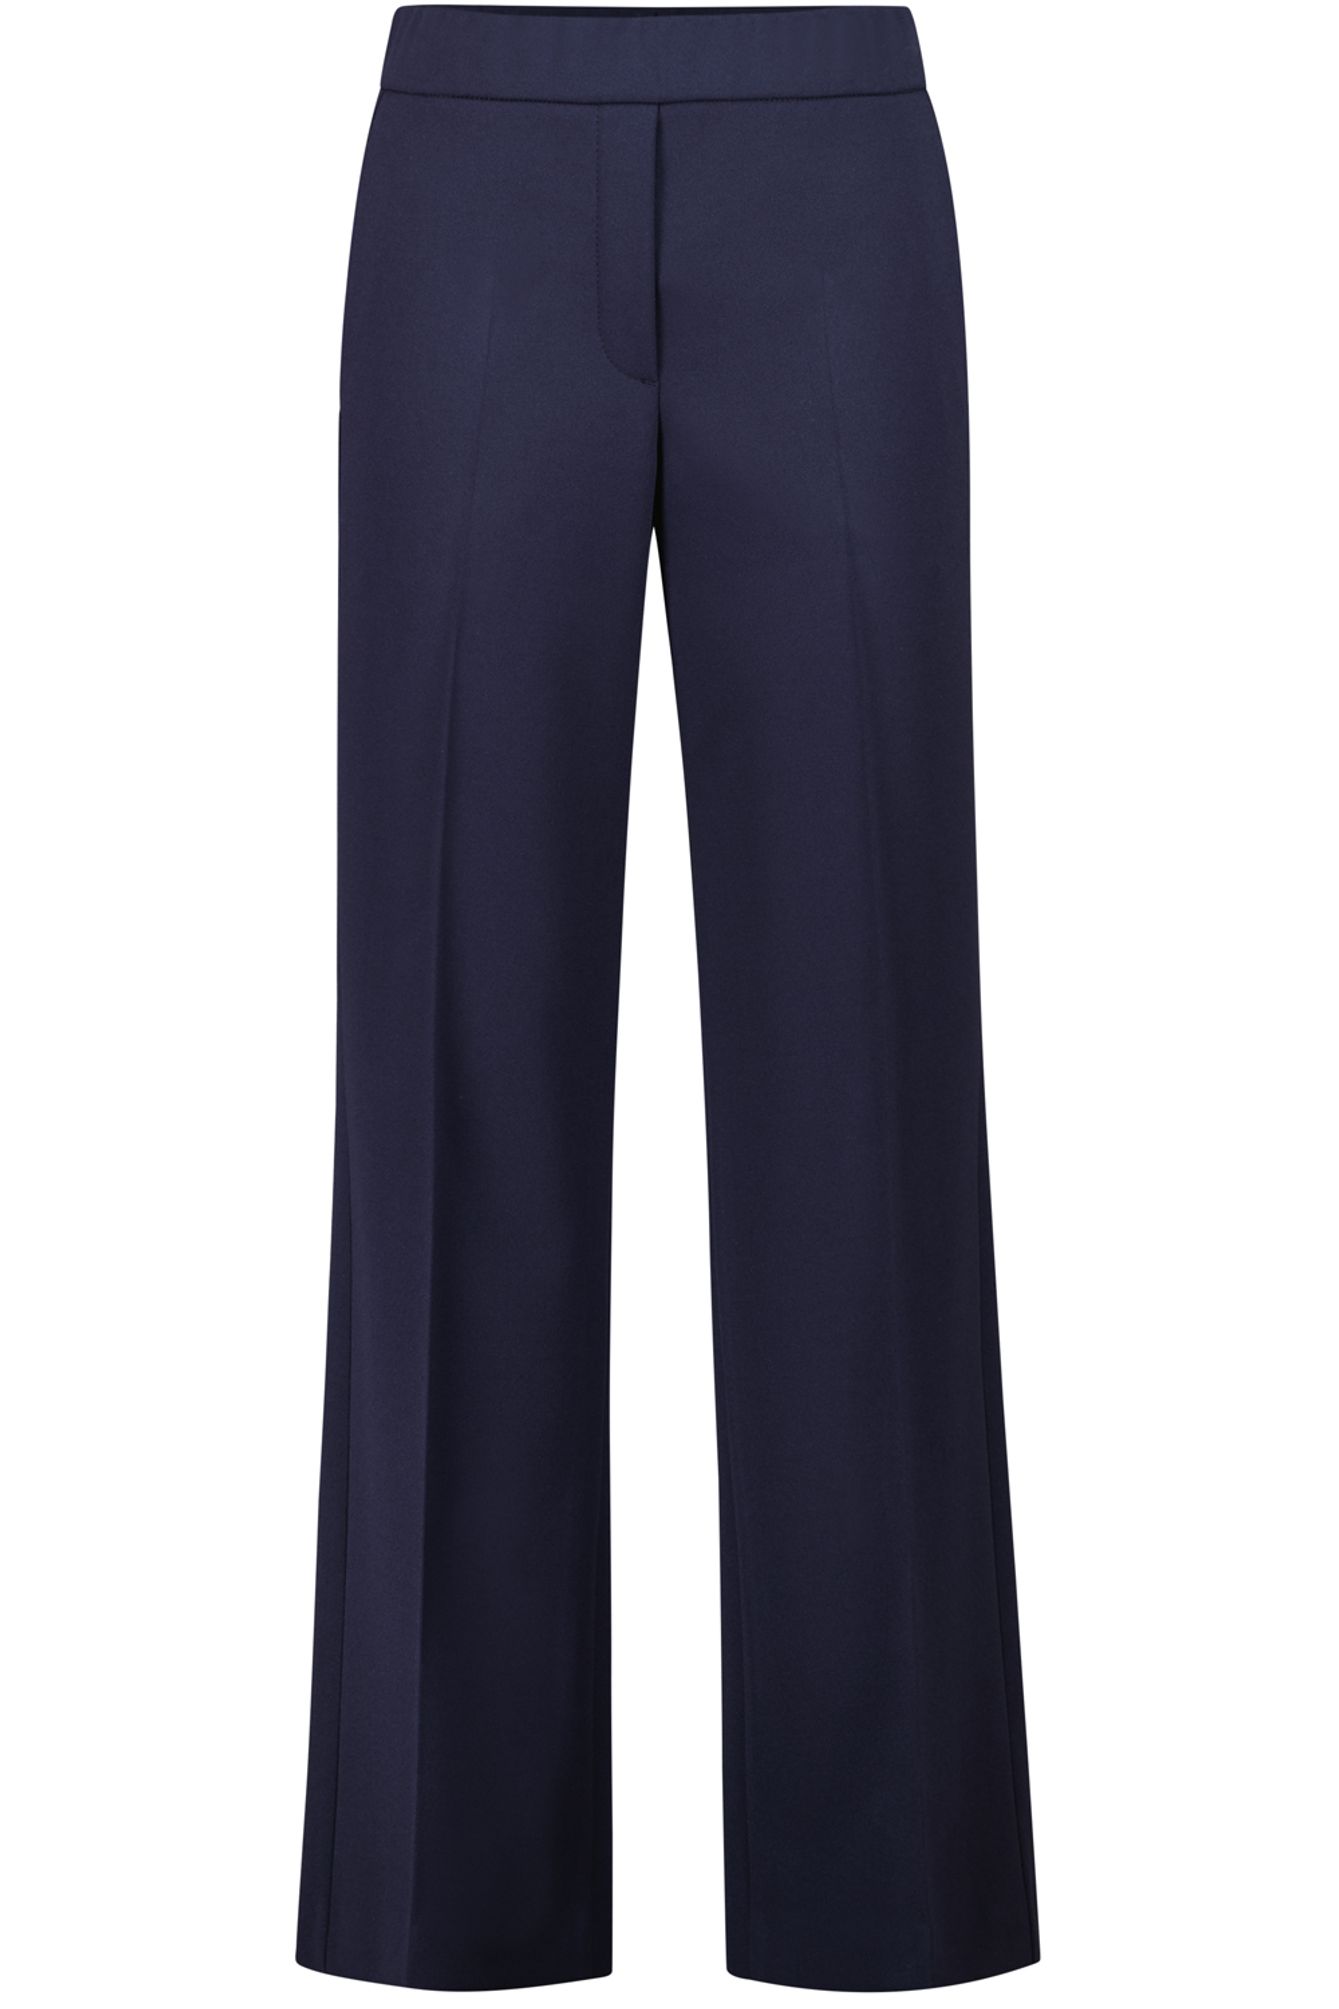 Брюки Atelier Gardeur Hose, синий брюки gardeur светлые 46 размер